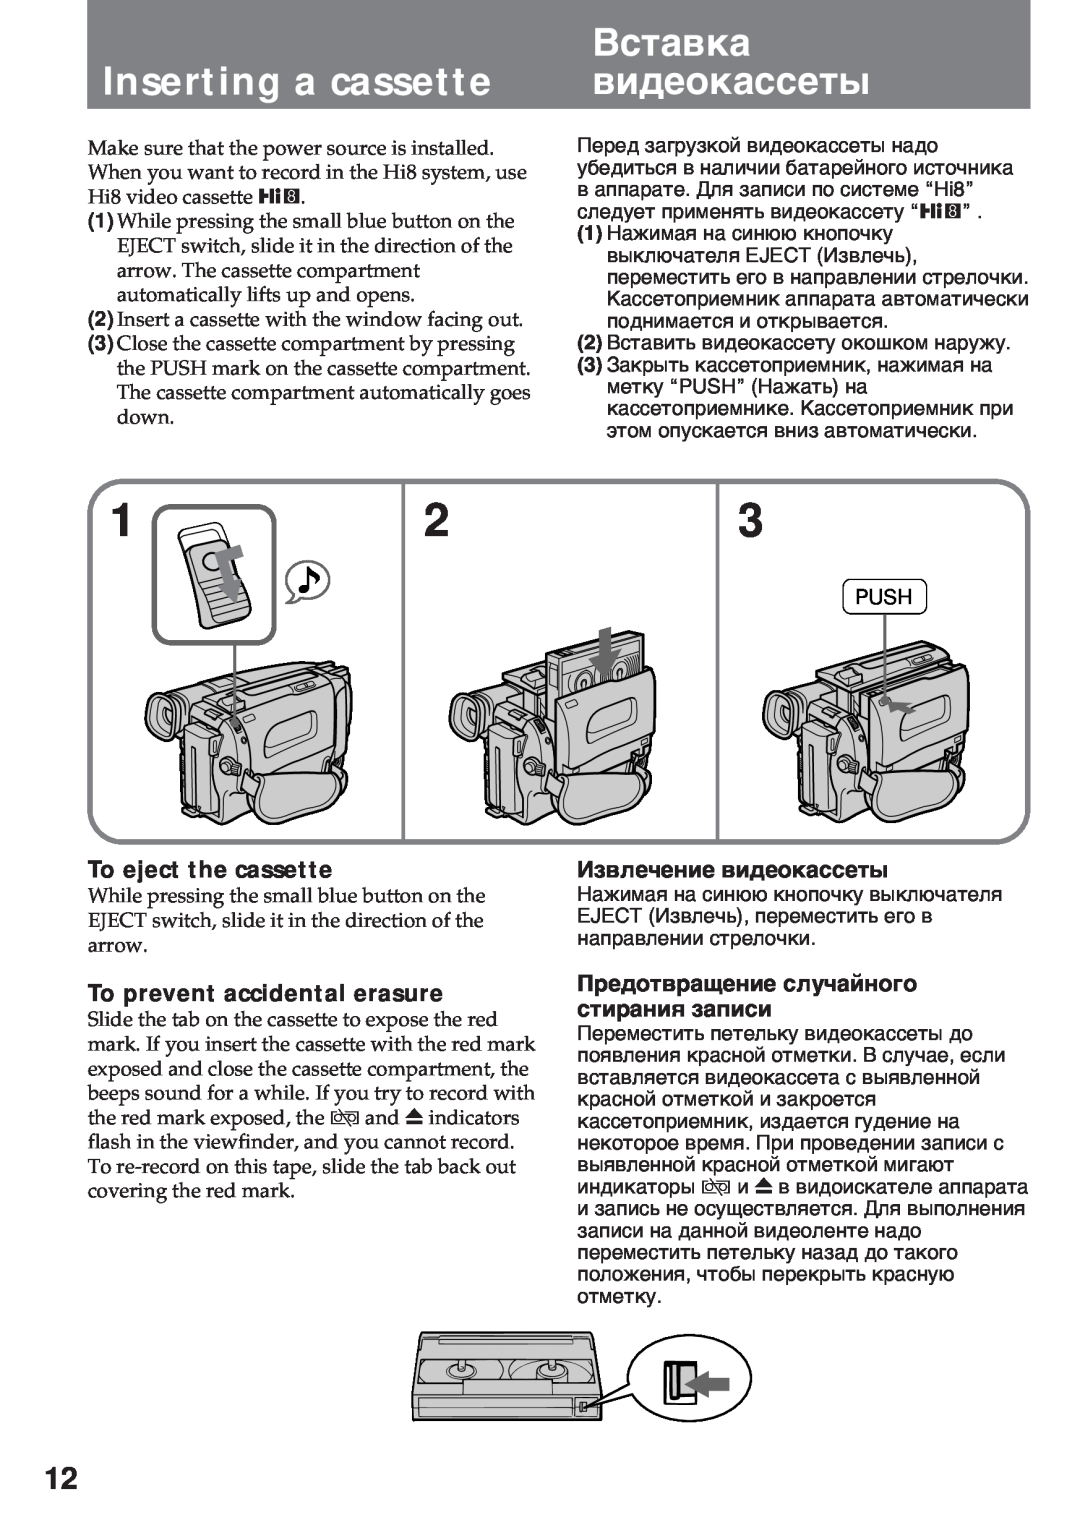 Sony CCD-TR920E Inserting a cassette, Вñòàâêà âèäåîêàññåòû, To eject the cassette, To prevent accidental erasure 